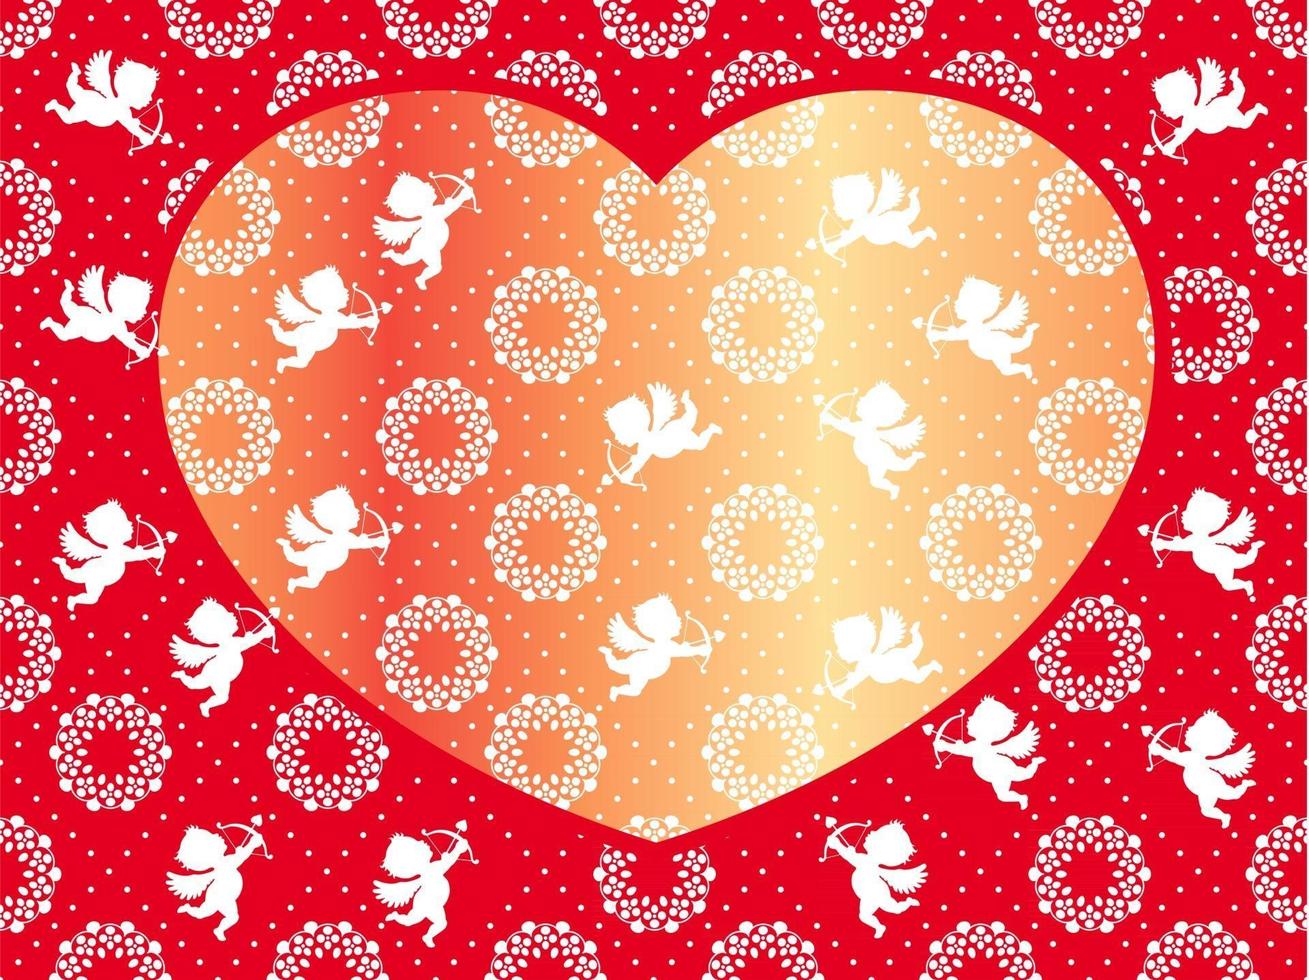 Plantilla de tarjeta de vector transparente de San Valentín con cupidos volando en y alrededor de una forma de corazón